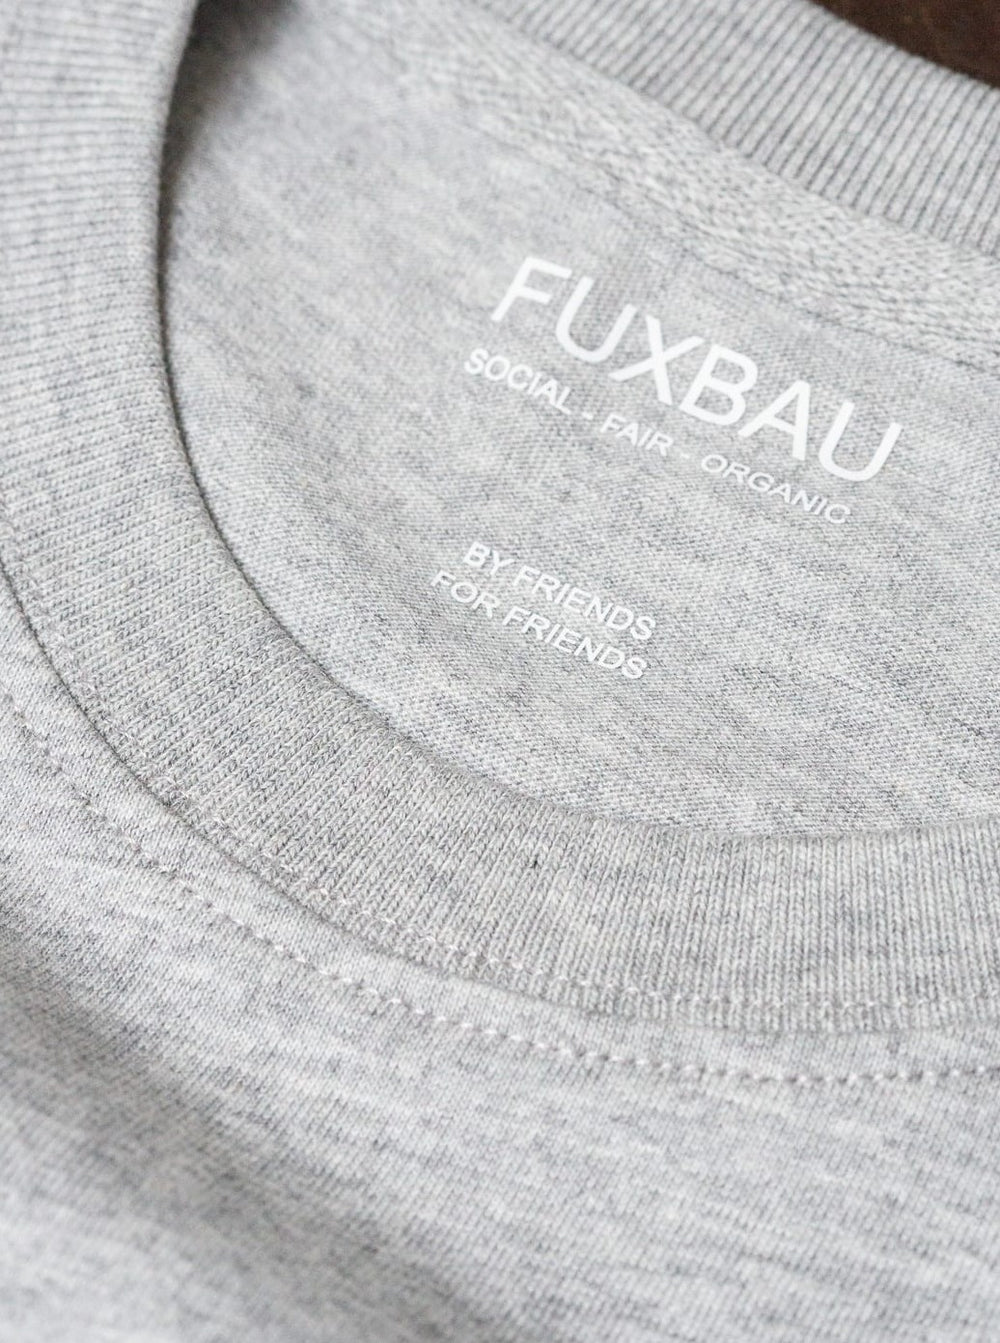 Nachhaltiges Unisex Basic T-Shirt von FUXBAU aus 100% GOTS zertifizierter Biobaumwolle in grau, spare im 3er Pack.